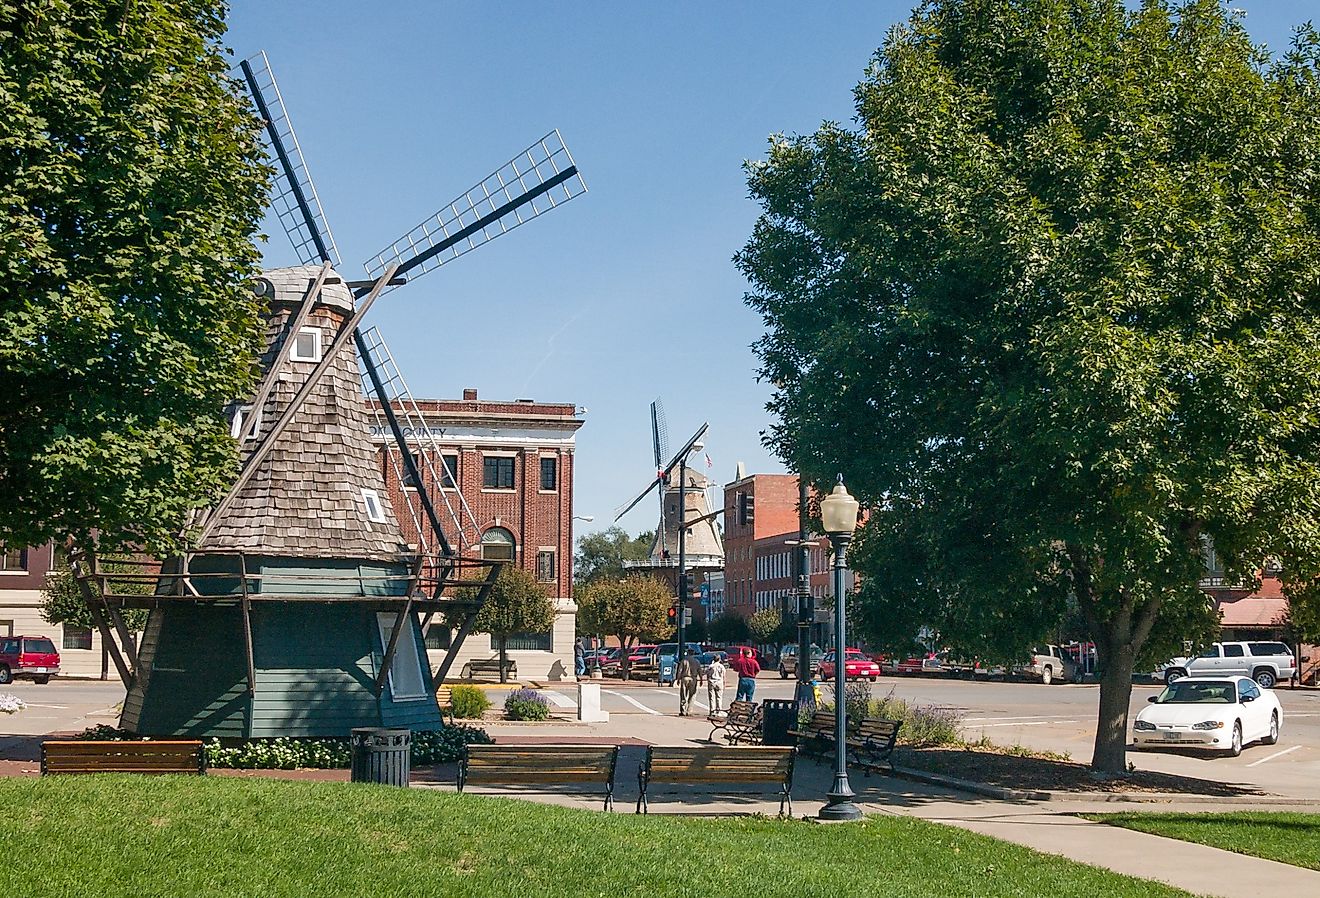 Windmill at Dutch village Pella, Iowa.